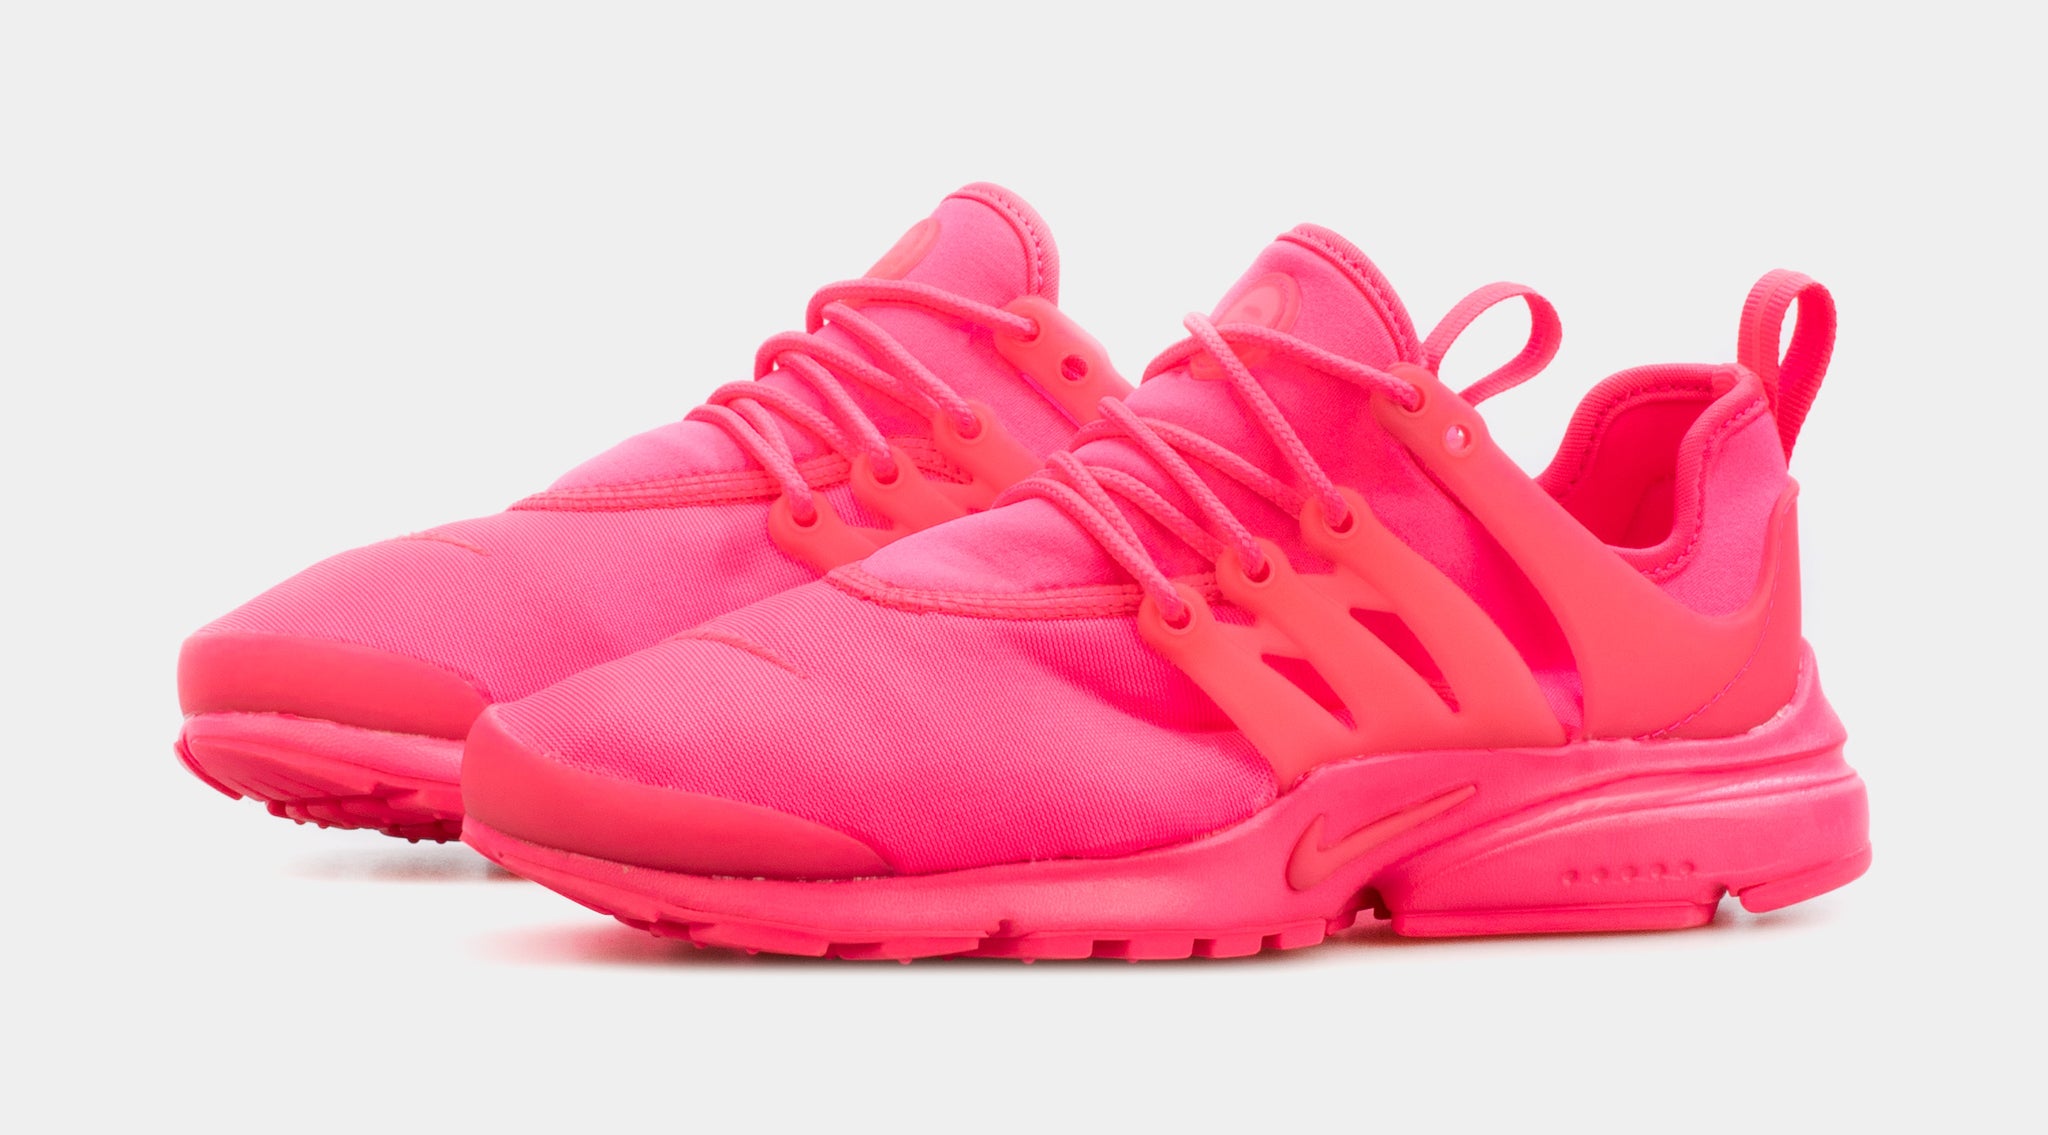 Elevado Islas del pacifico posición Nike Air Presto Womens Running Shoes Pink FD0290-600 – Shoe Palace